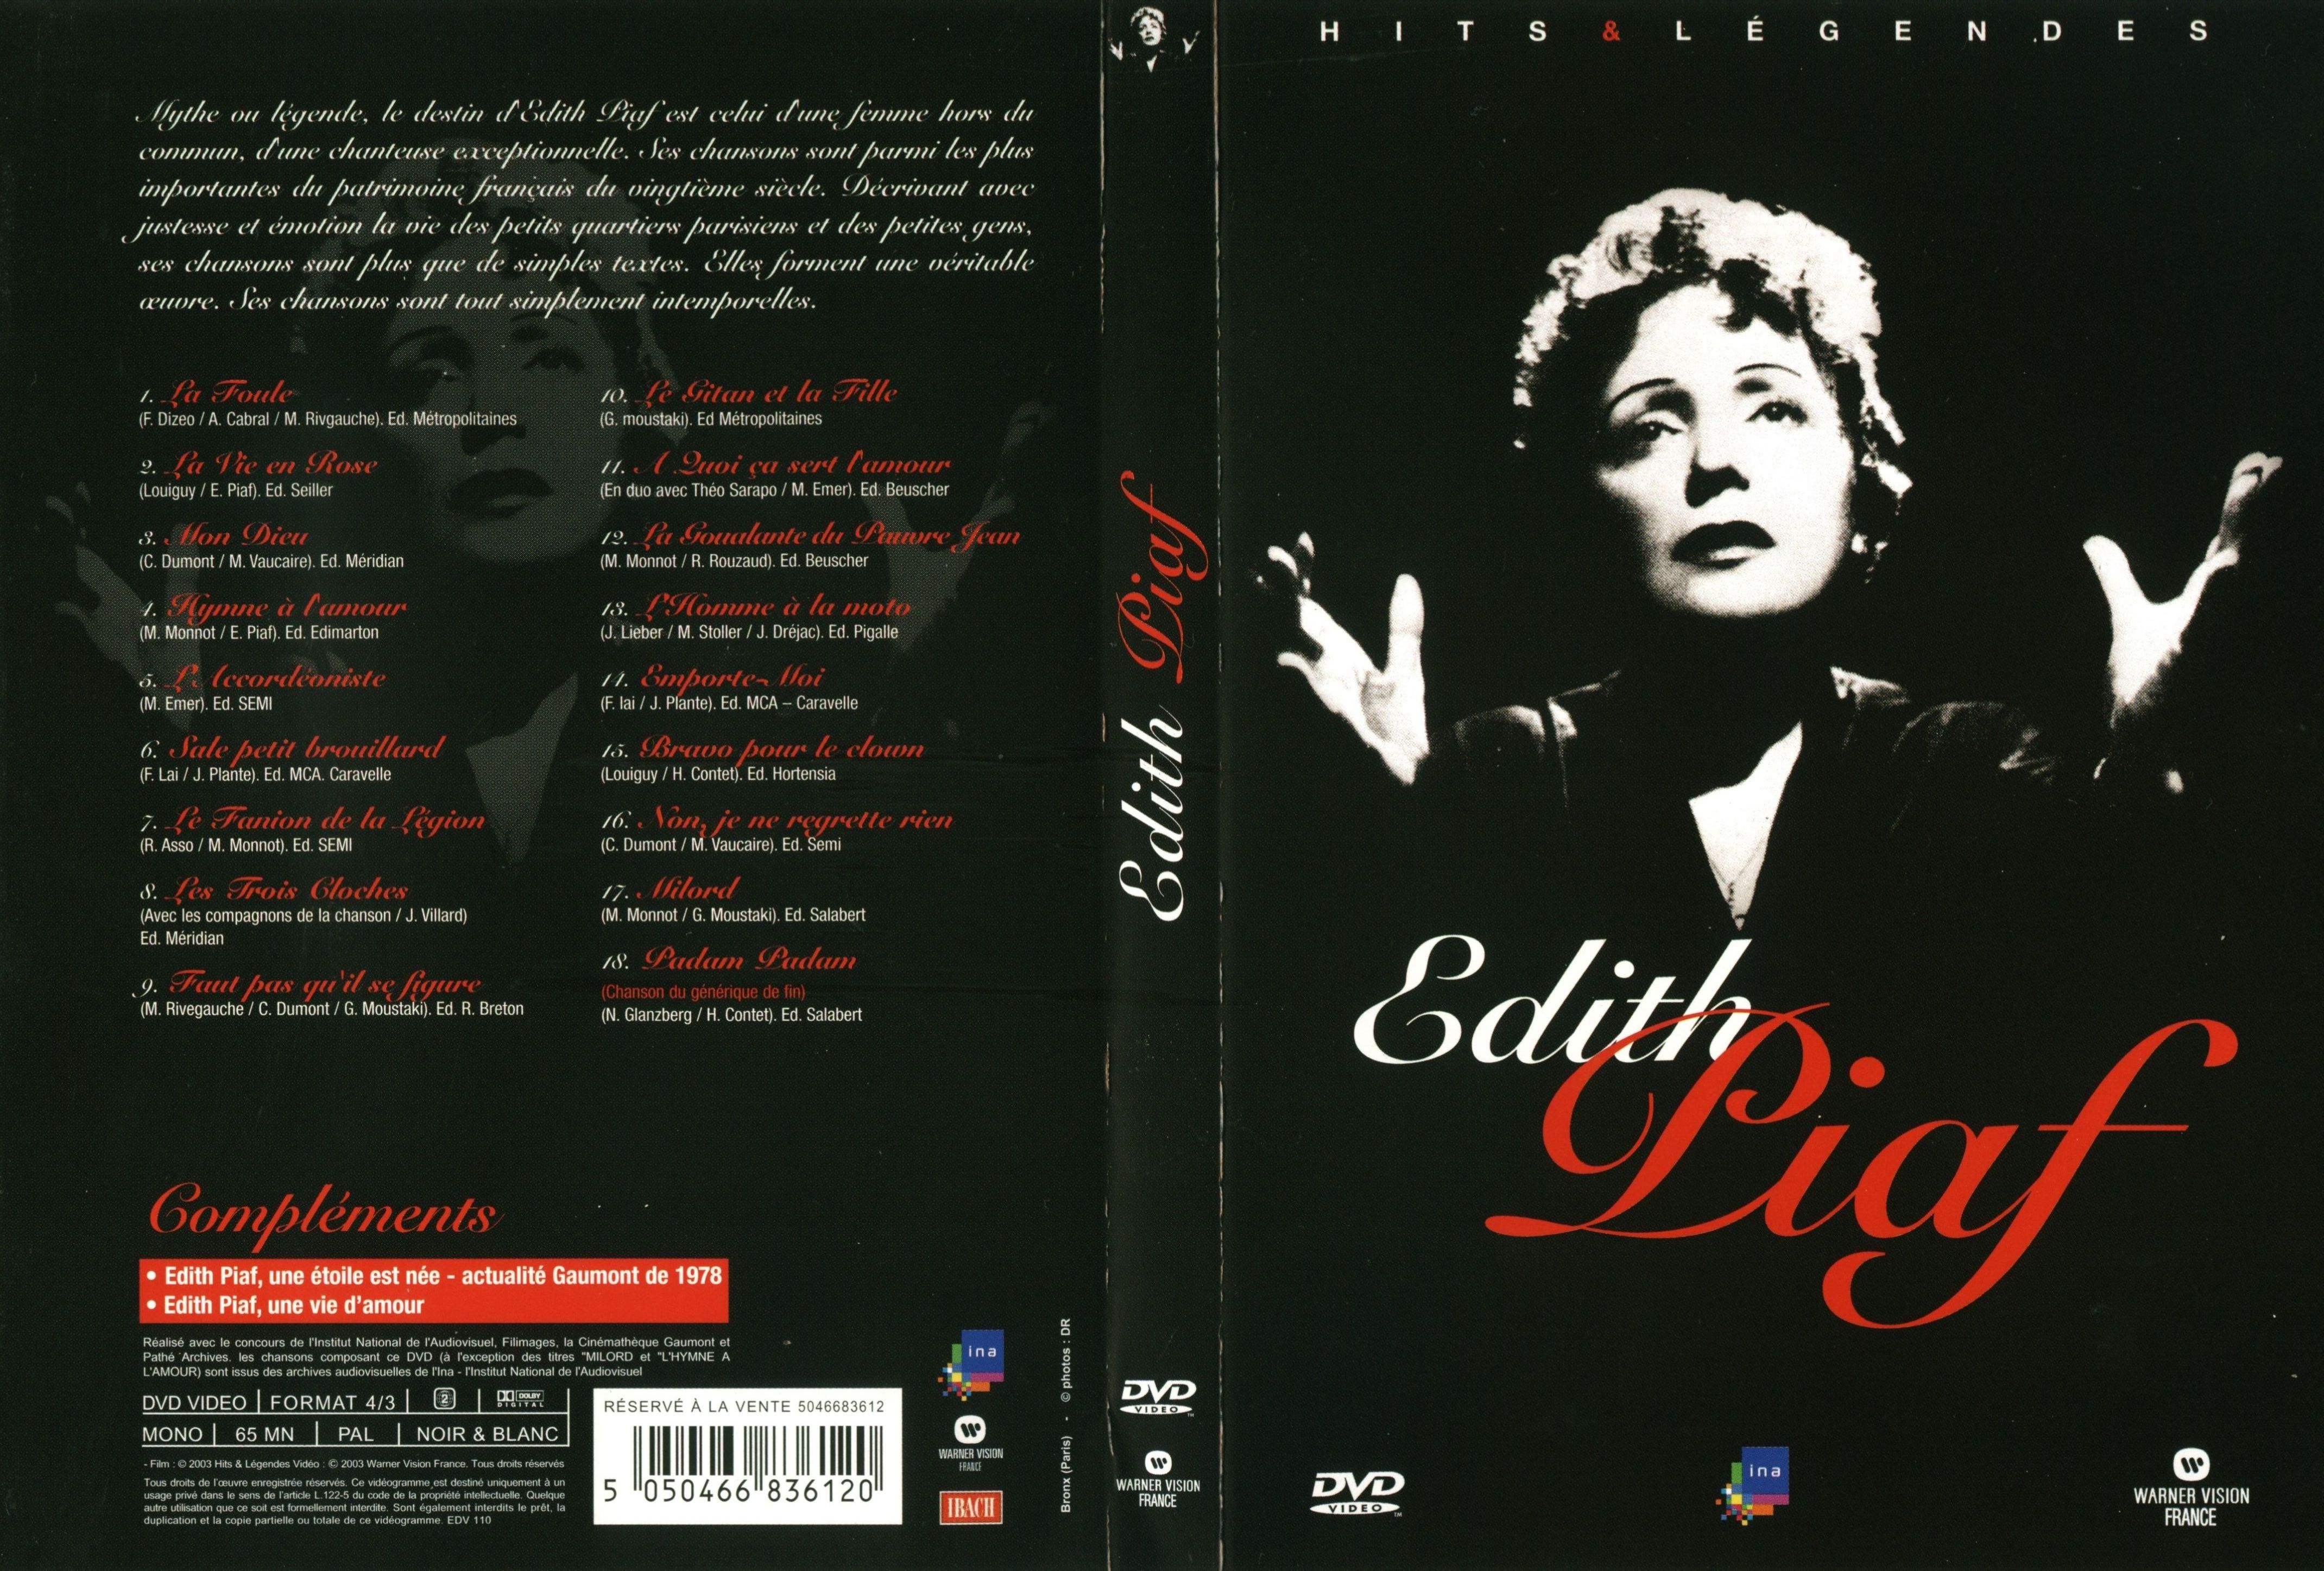 Jaquette DVD Edith Piaf - hits et lgendes